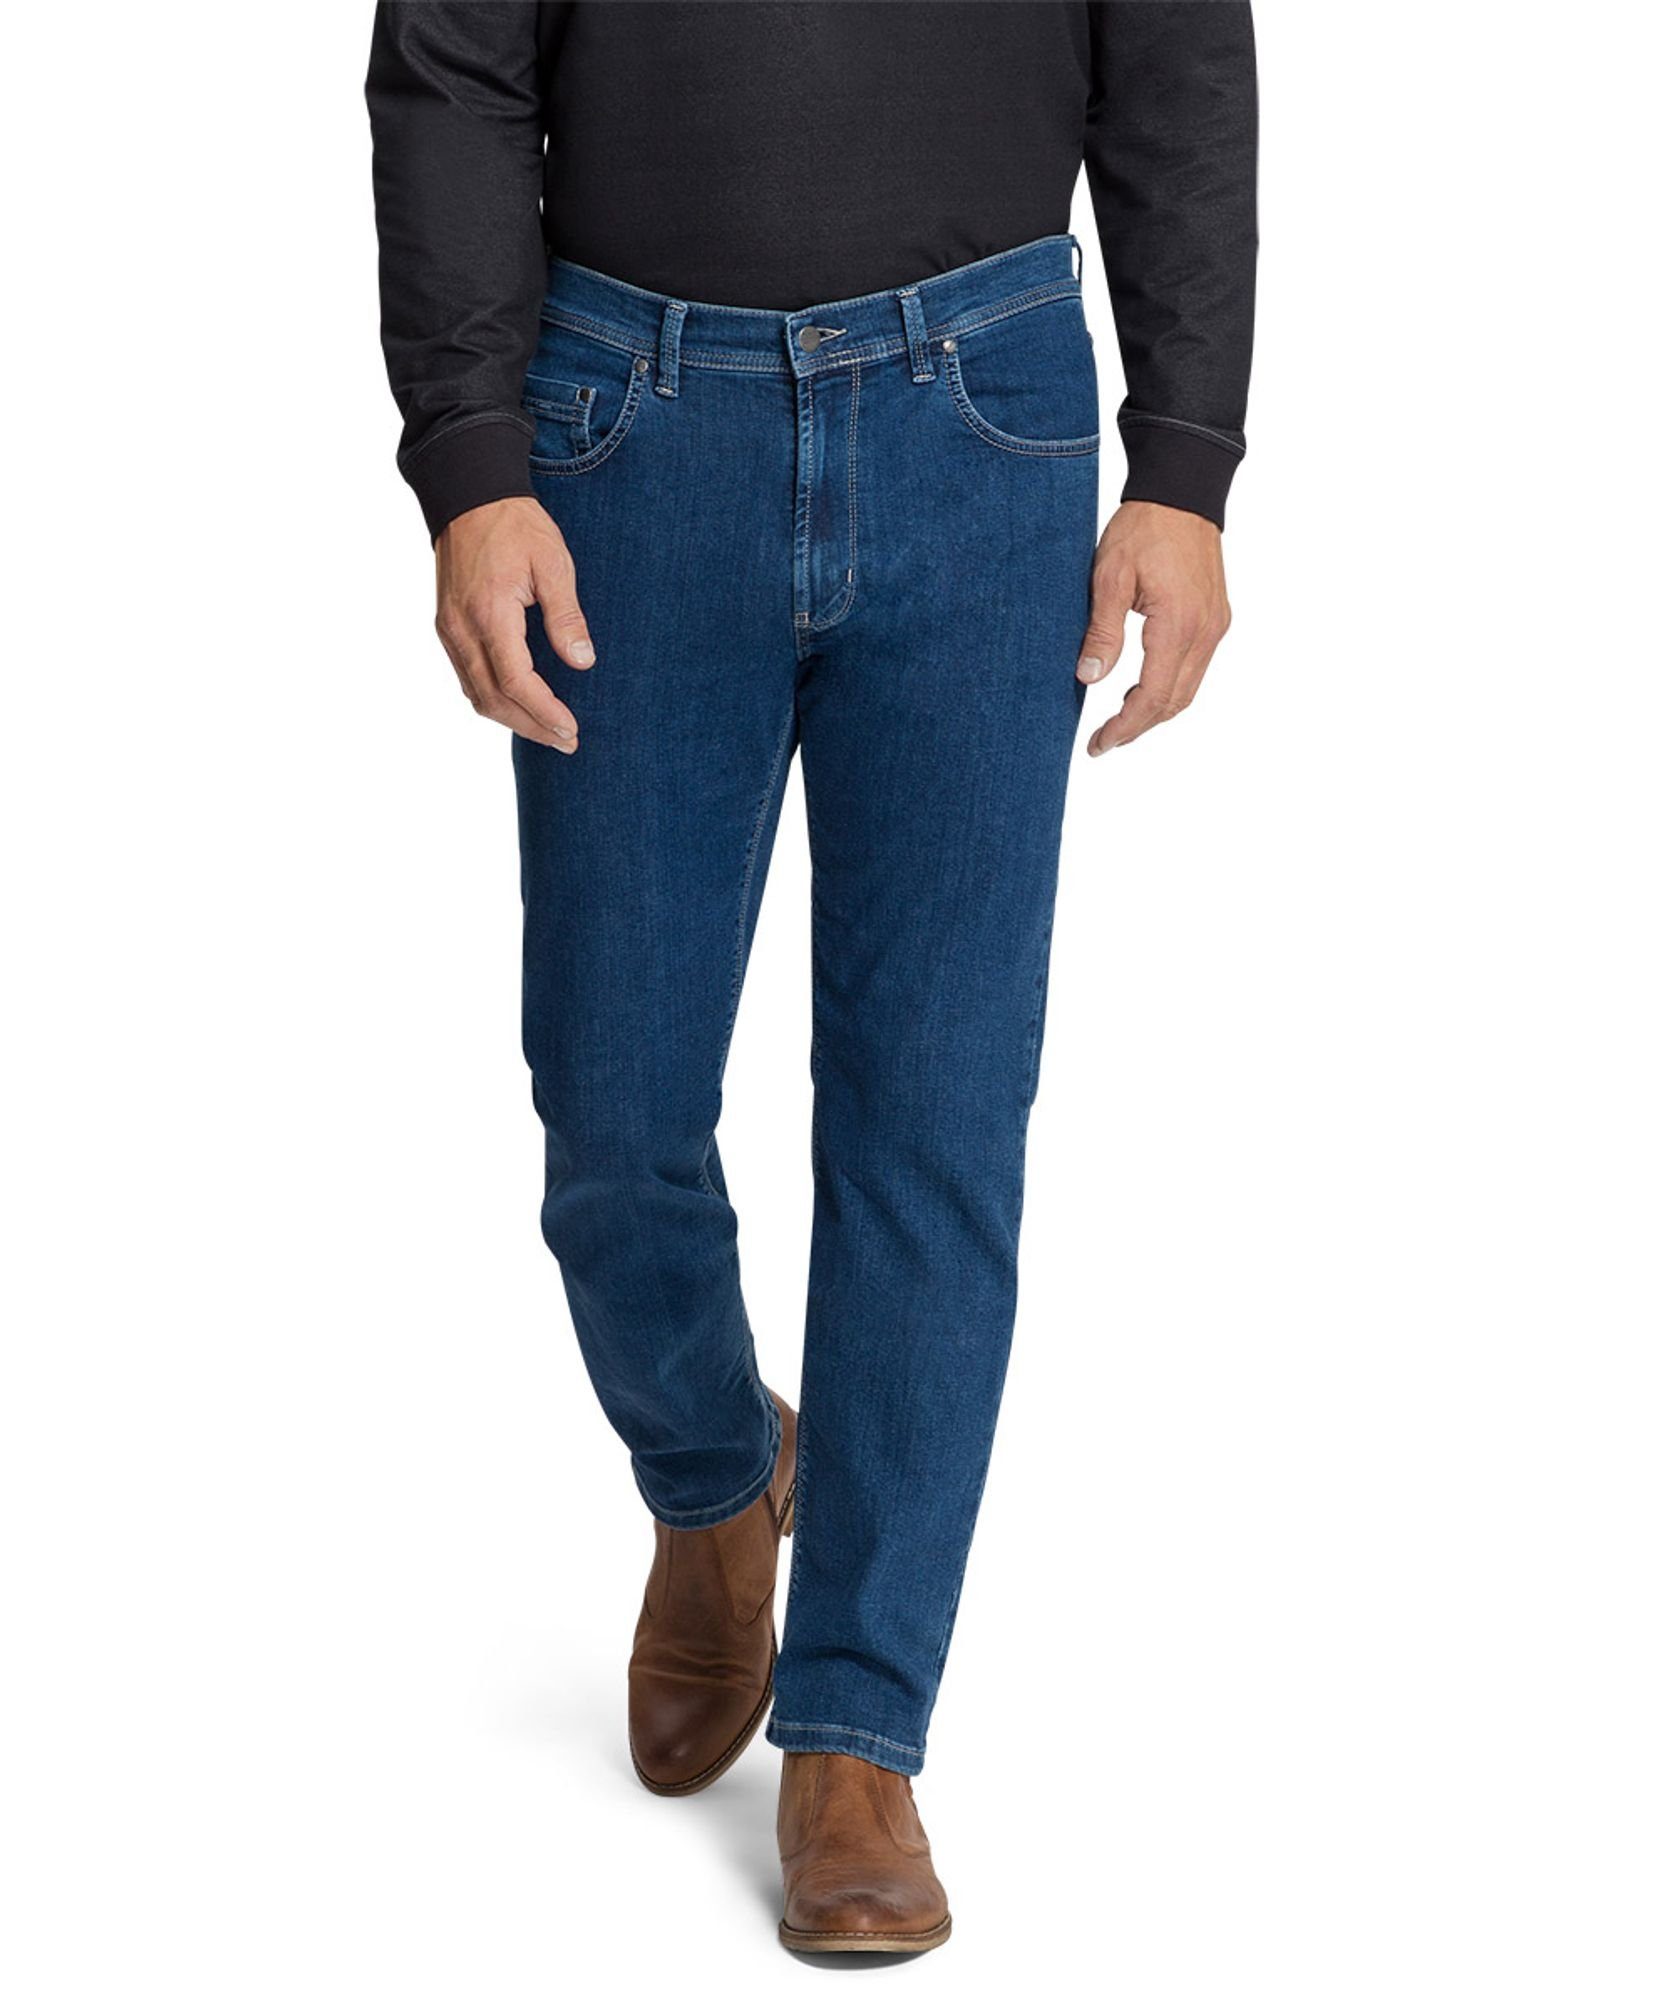 Authentic (6821) 16801.6588 Pioneer blue 5-Pocket-Jeans P0 Jeans stonewash hohe Flexibilität